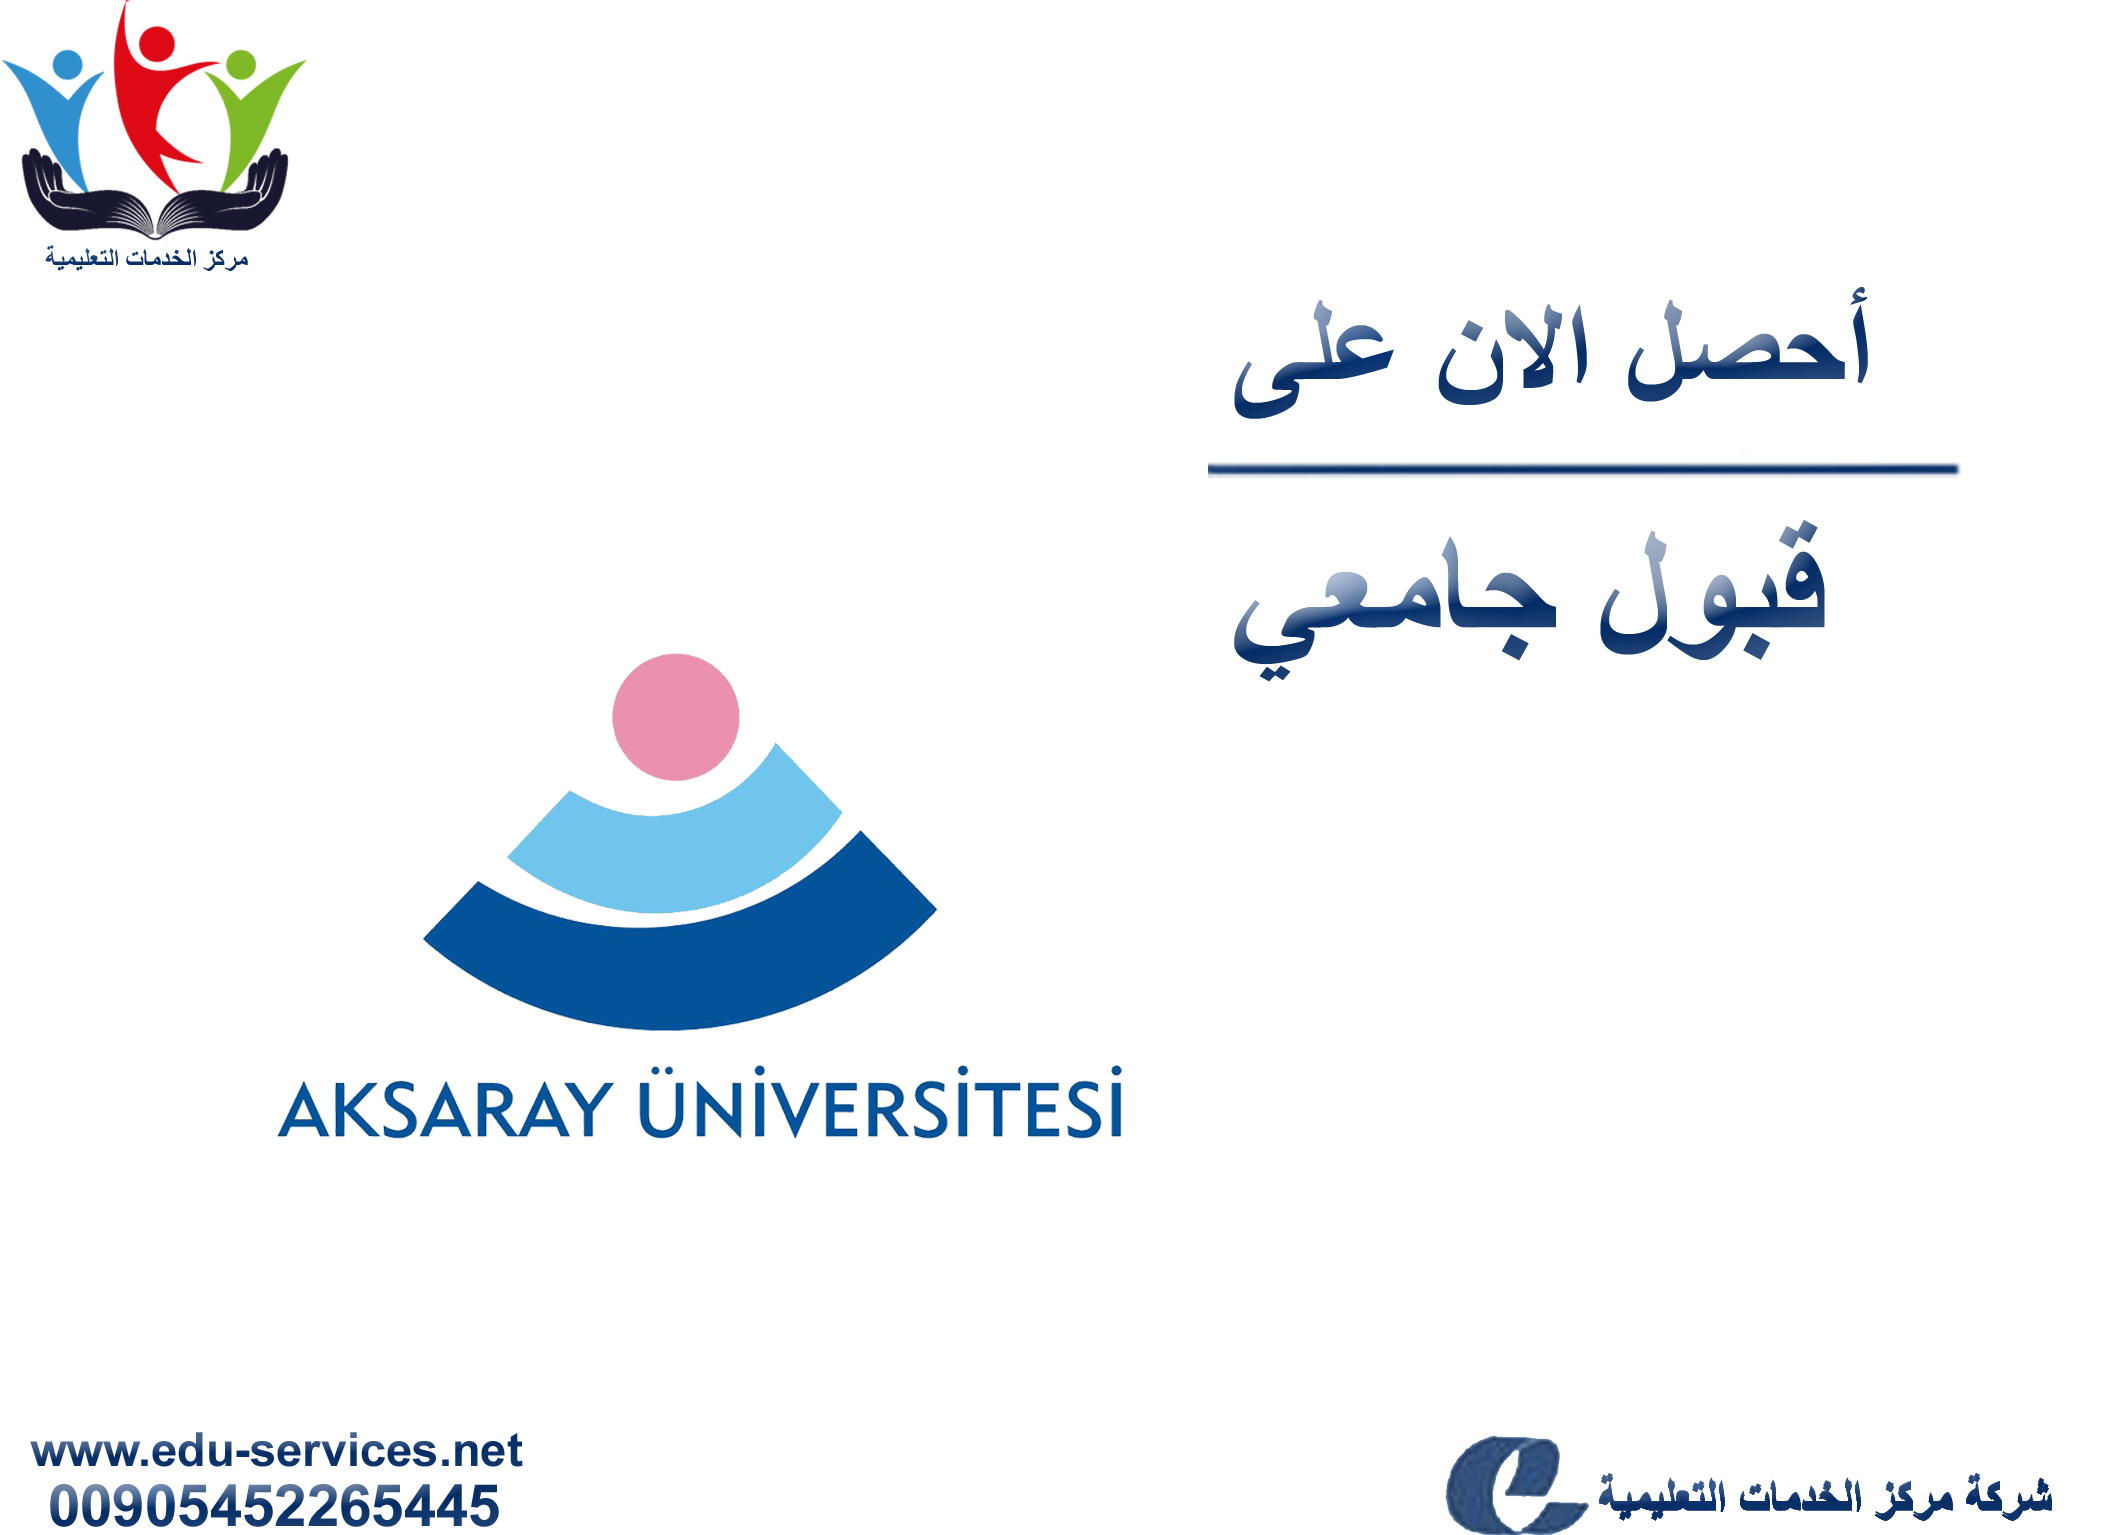 افتتاح التسجيل على جامعة اكسراي لبرنامج الدراسات العليا للعام 2019-2020